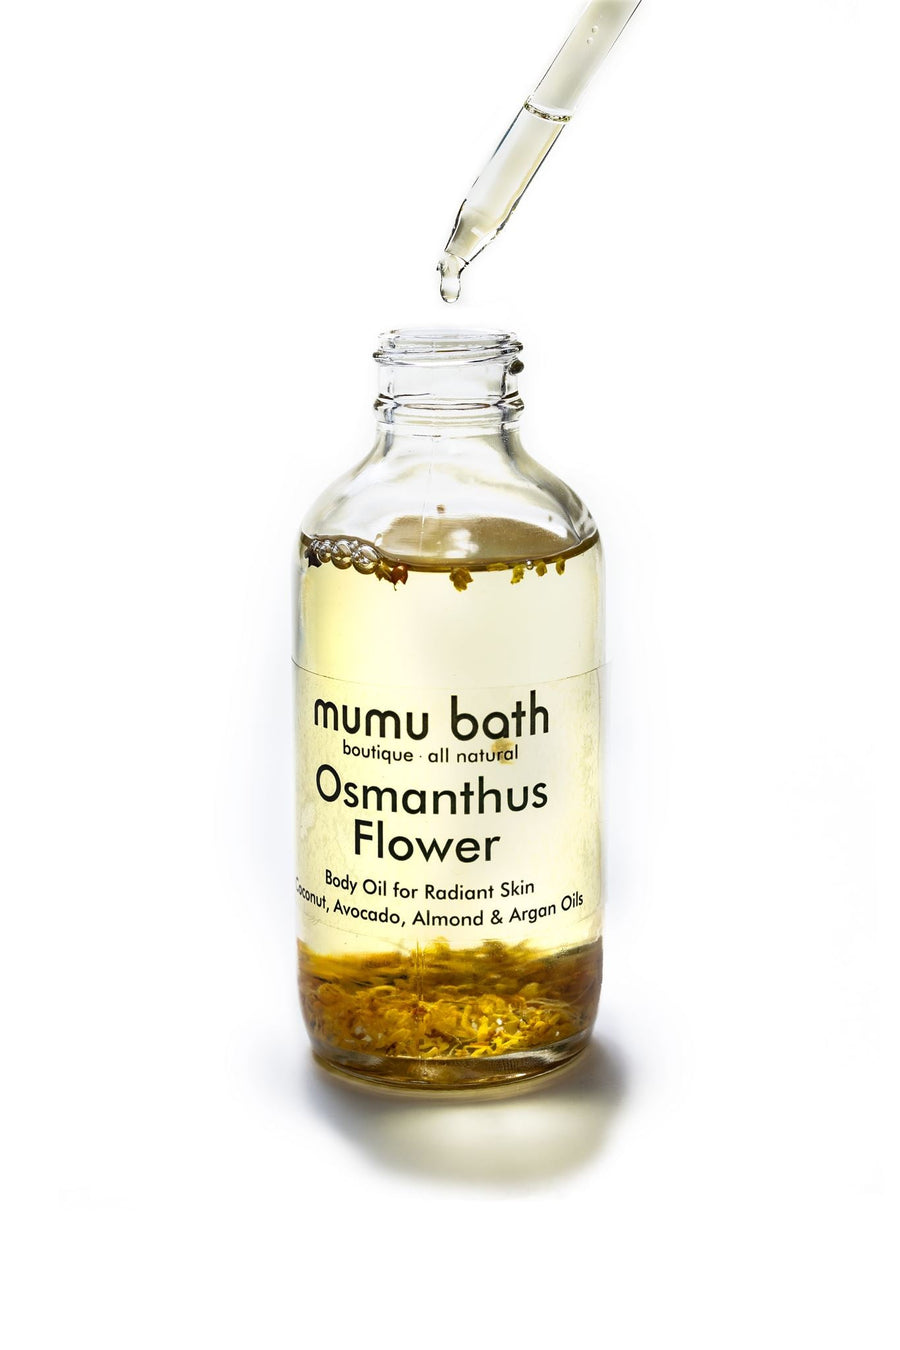 Osmanthus Flower Body Oil